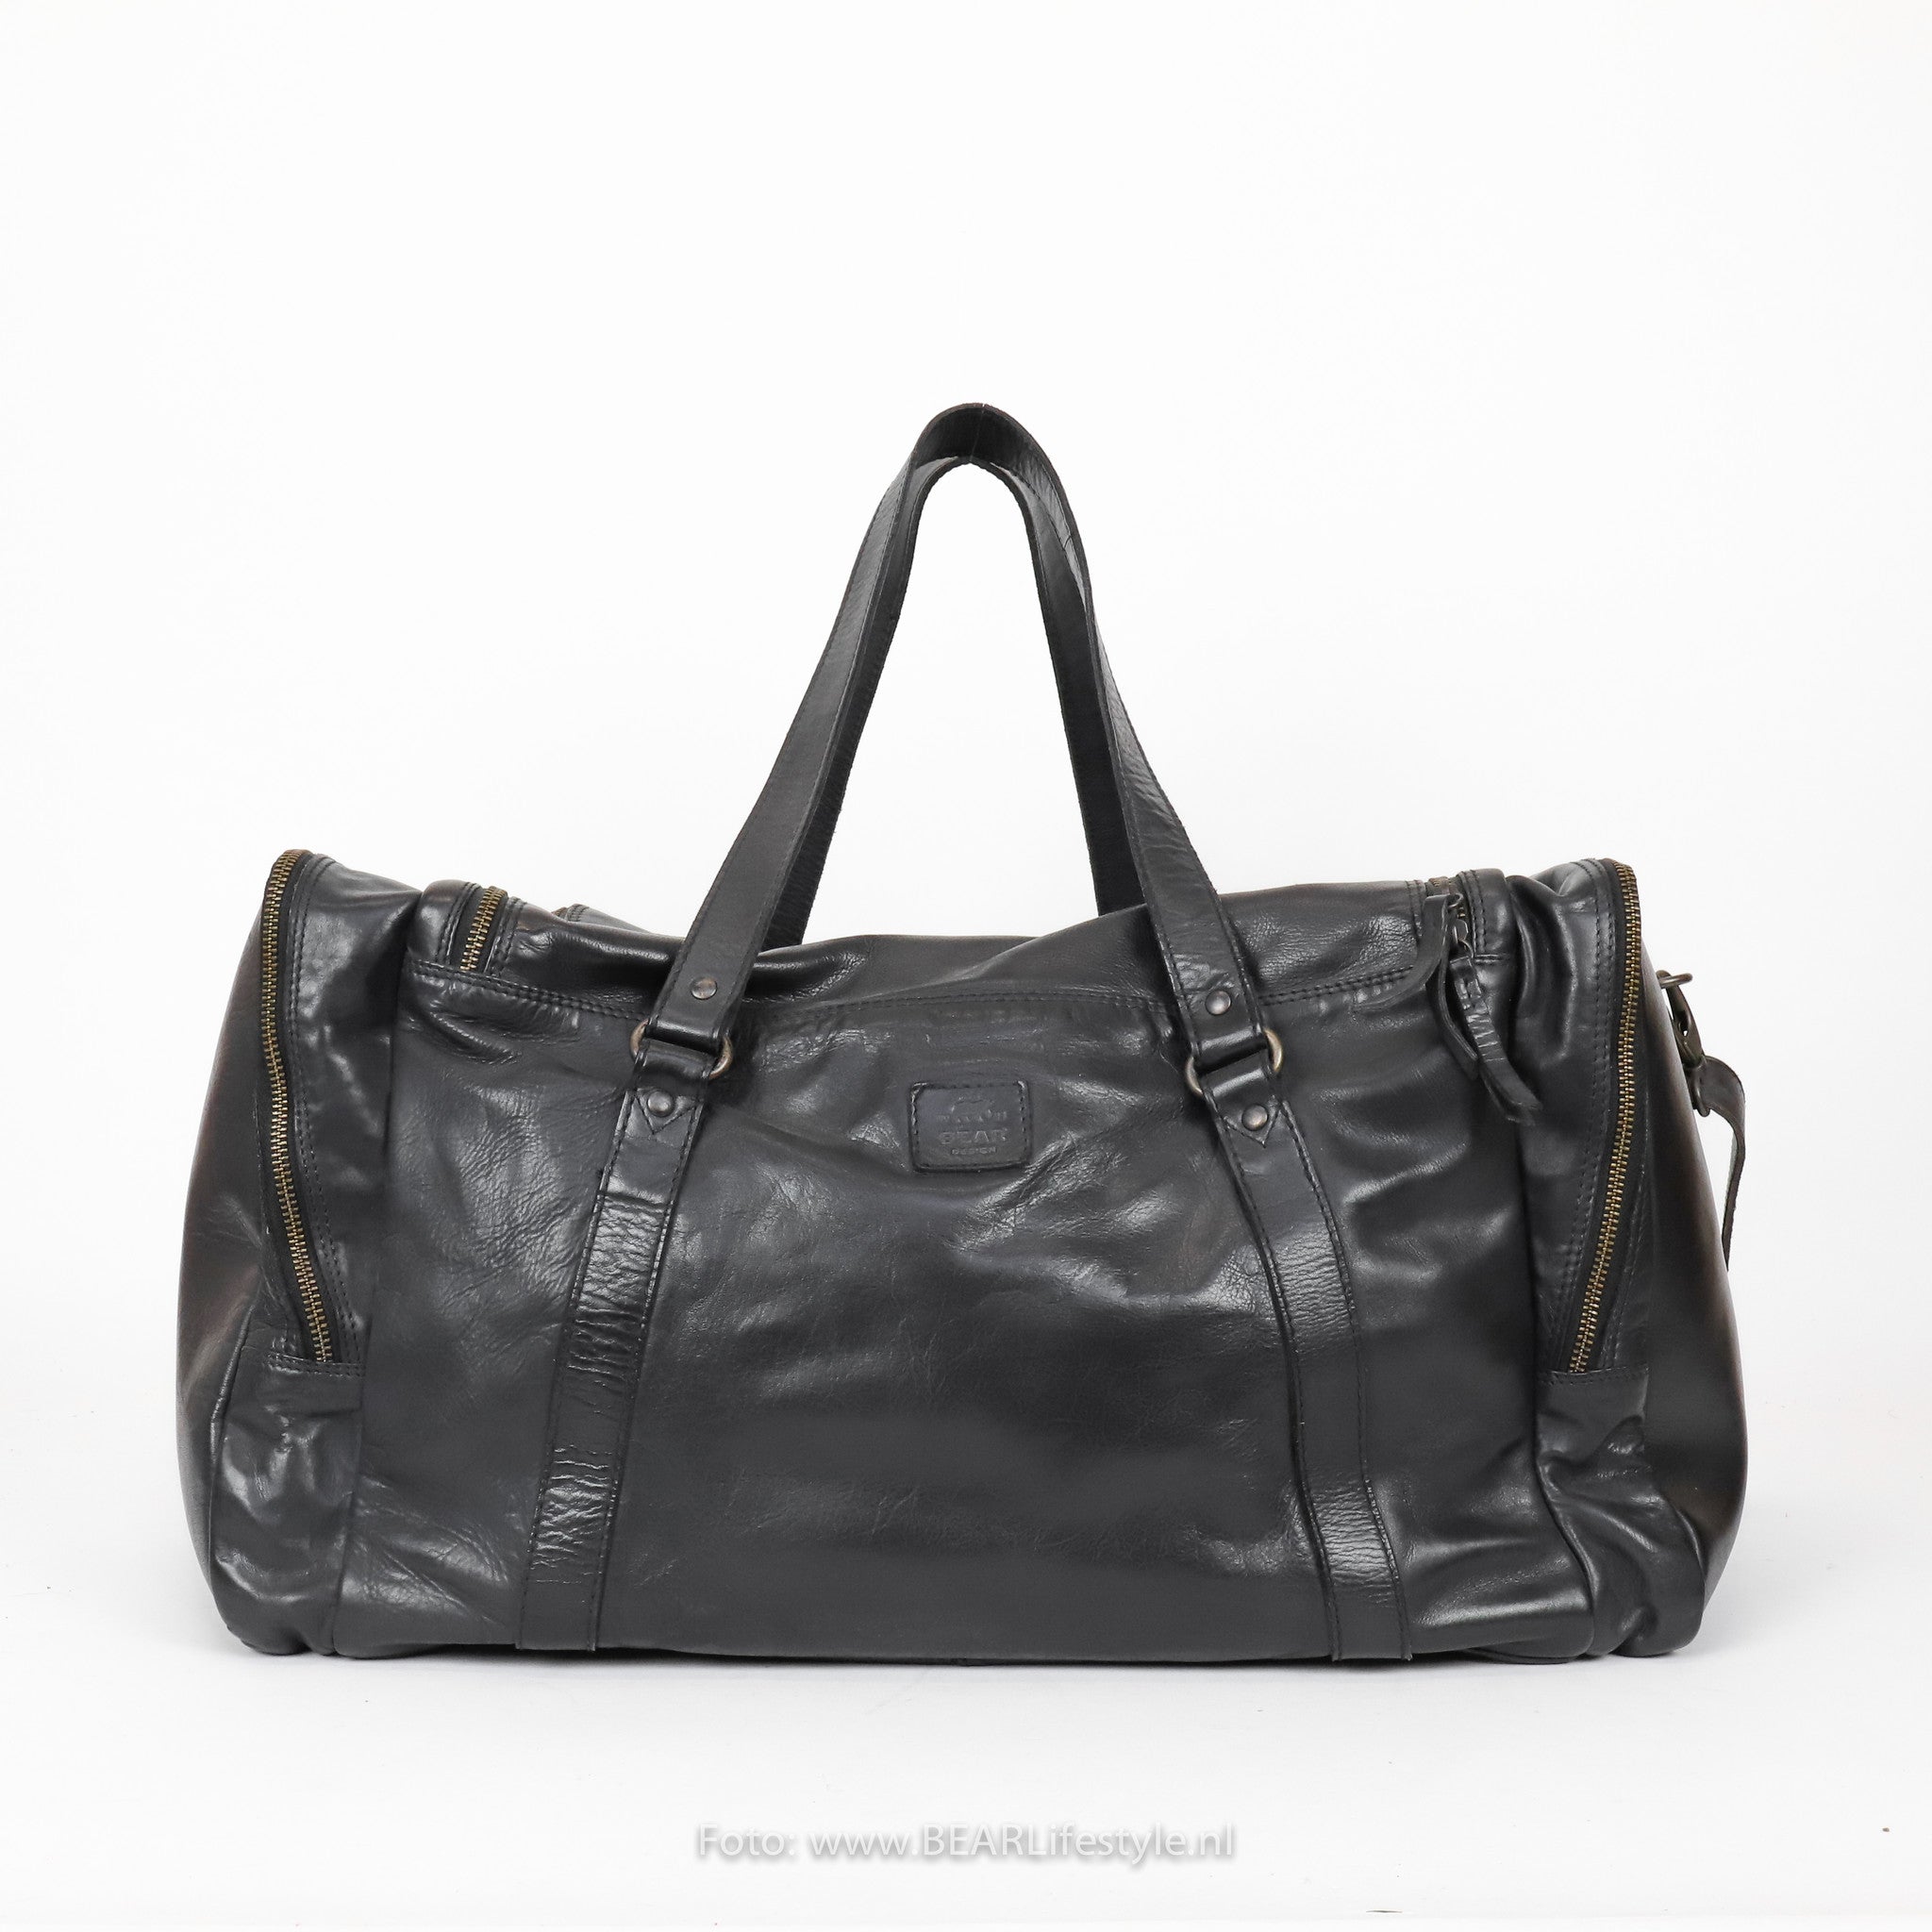 Weekend bag 'Max' black - CL 32879